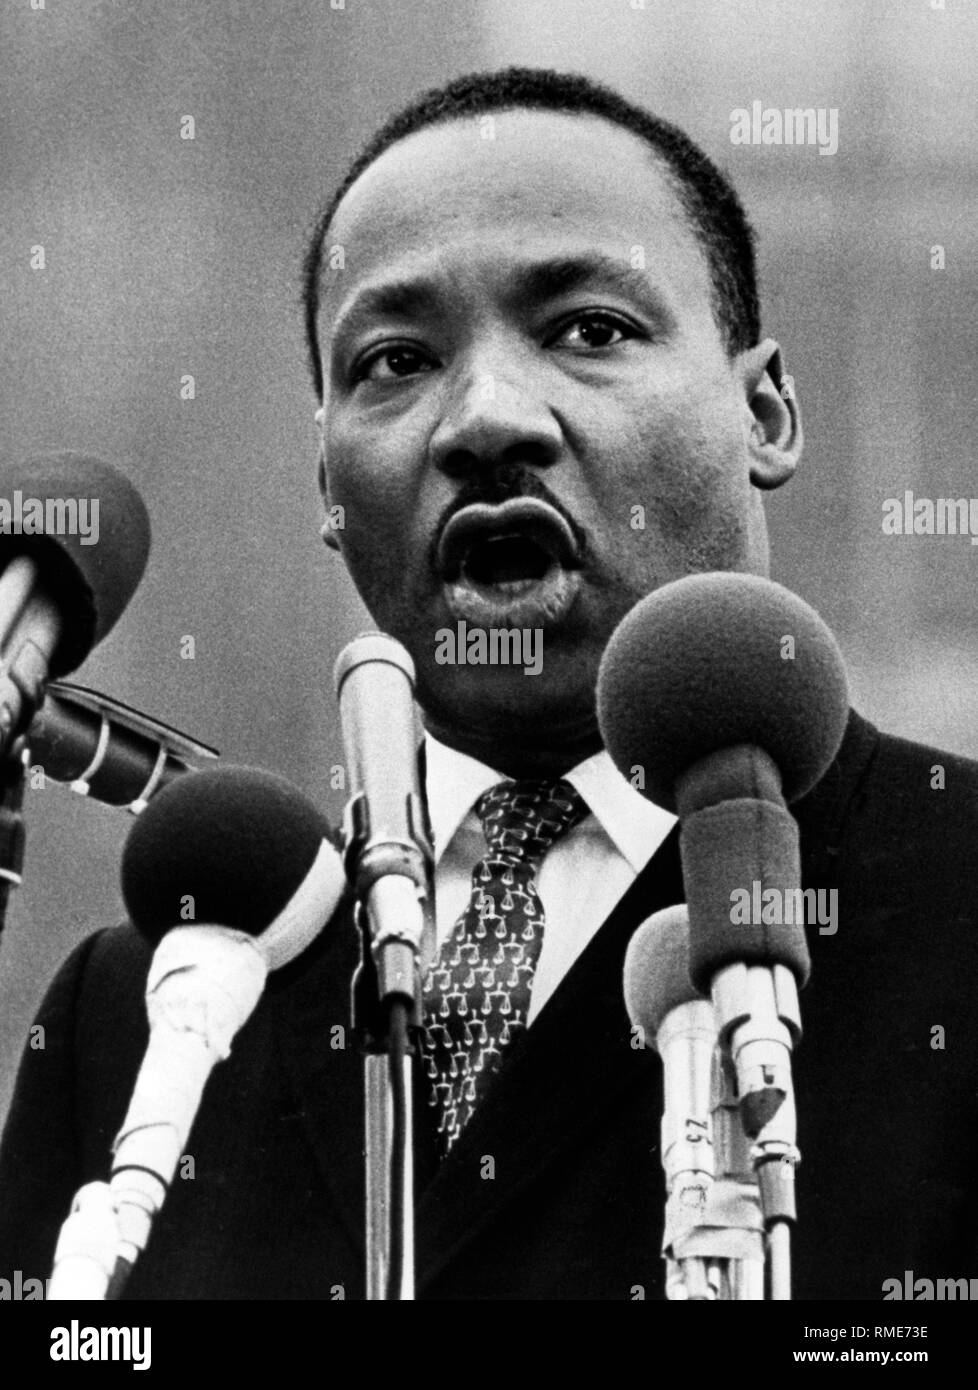 Martin Luther King, amerikanischer Bürgerrechtler. Undatiertes Foto. Stockfoto